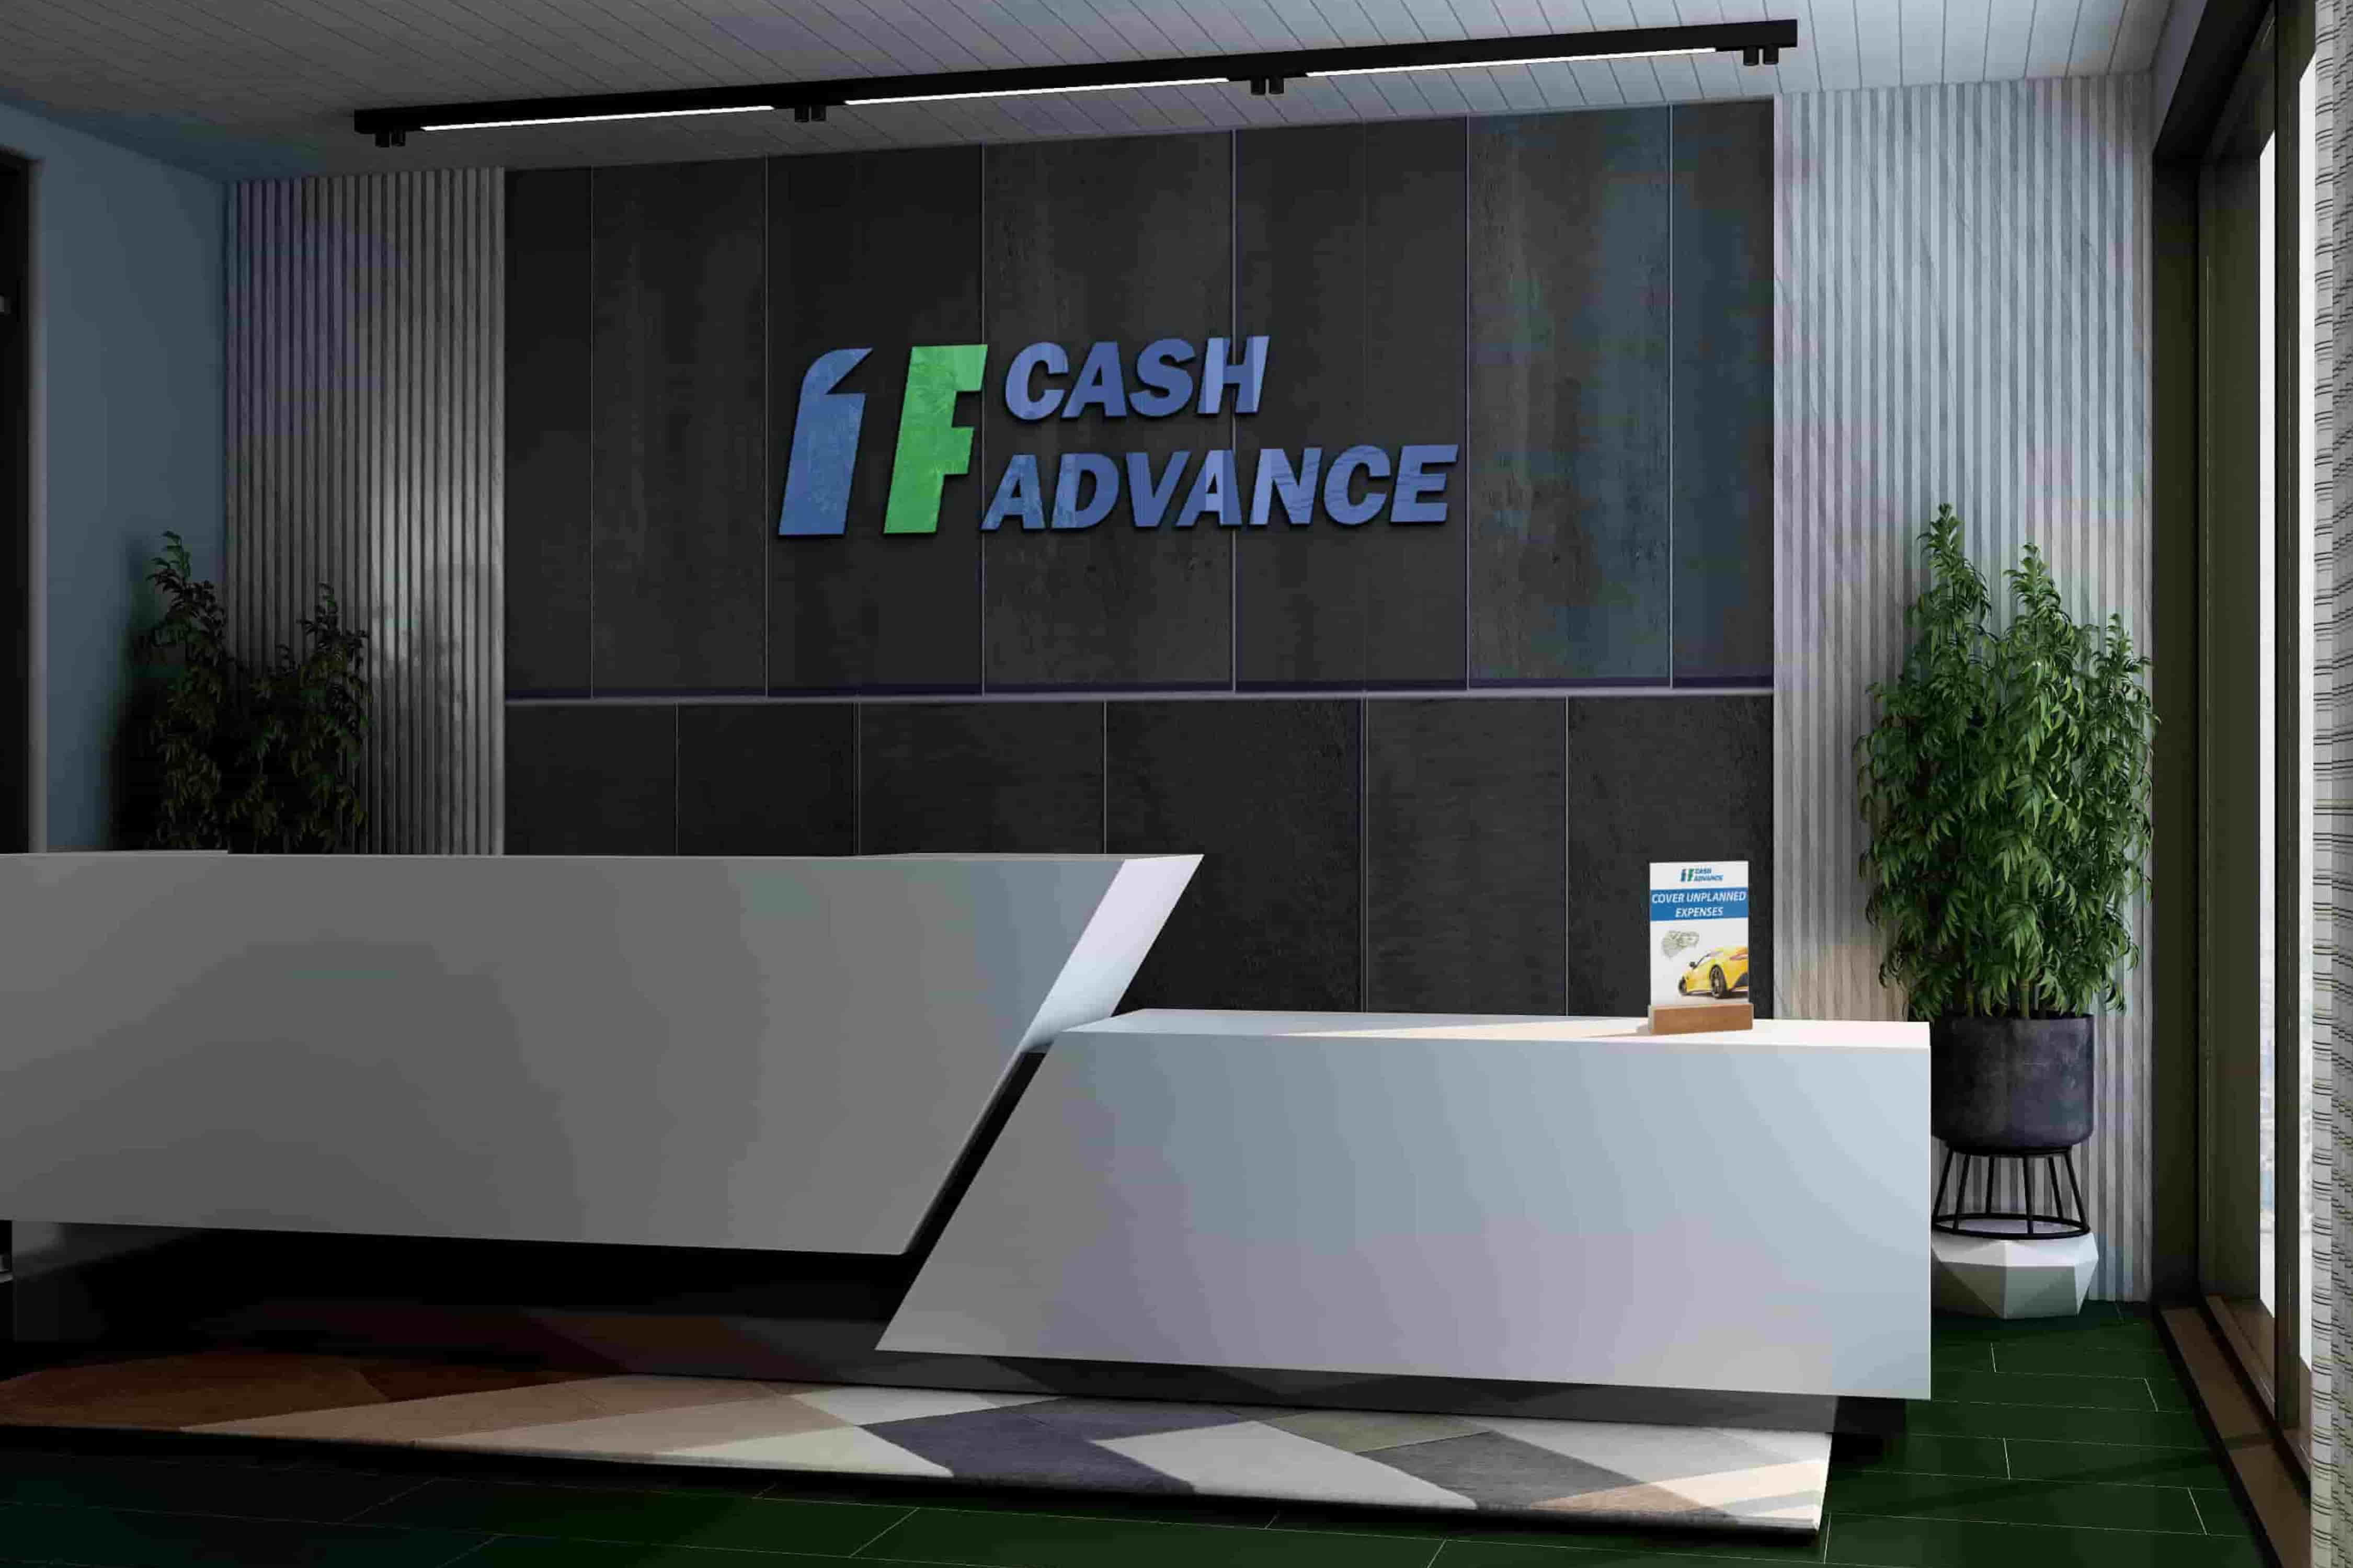 Cash advance loans in Cheyenne, WY